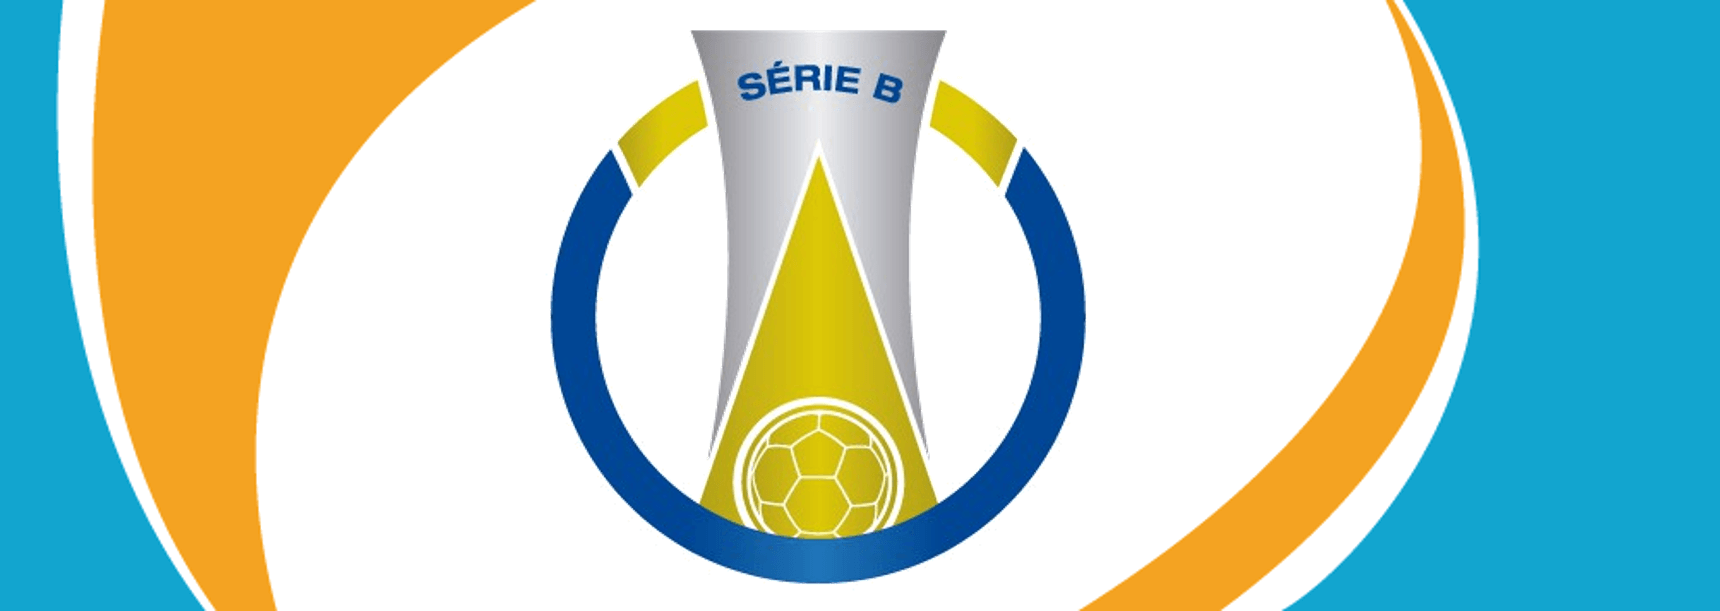 Ver Campeonato Brasileiro Série B